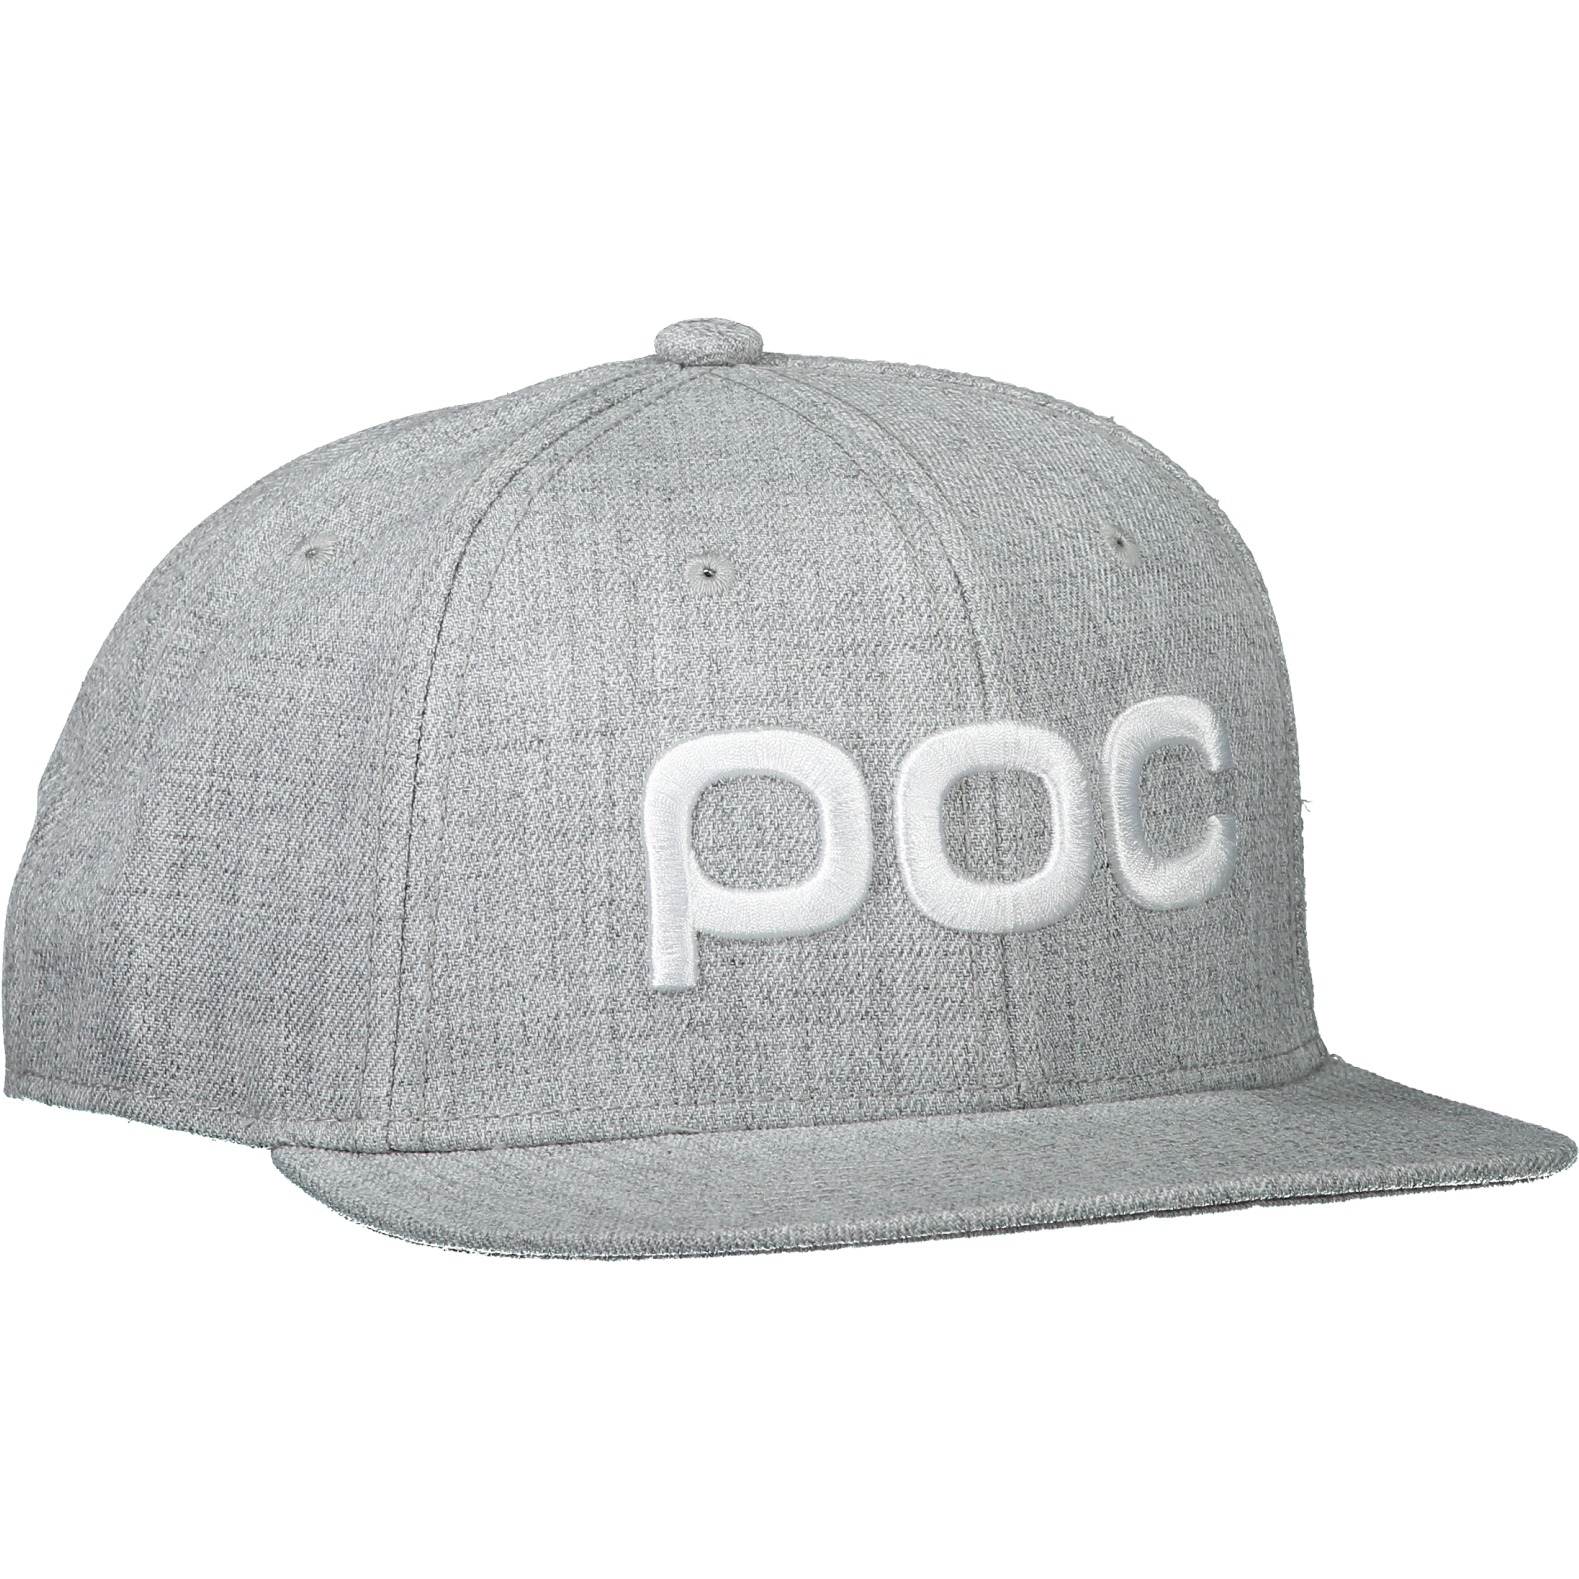 Produktbild von POC Corp Cap - 1044 grey melange